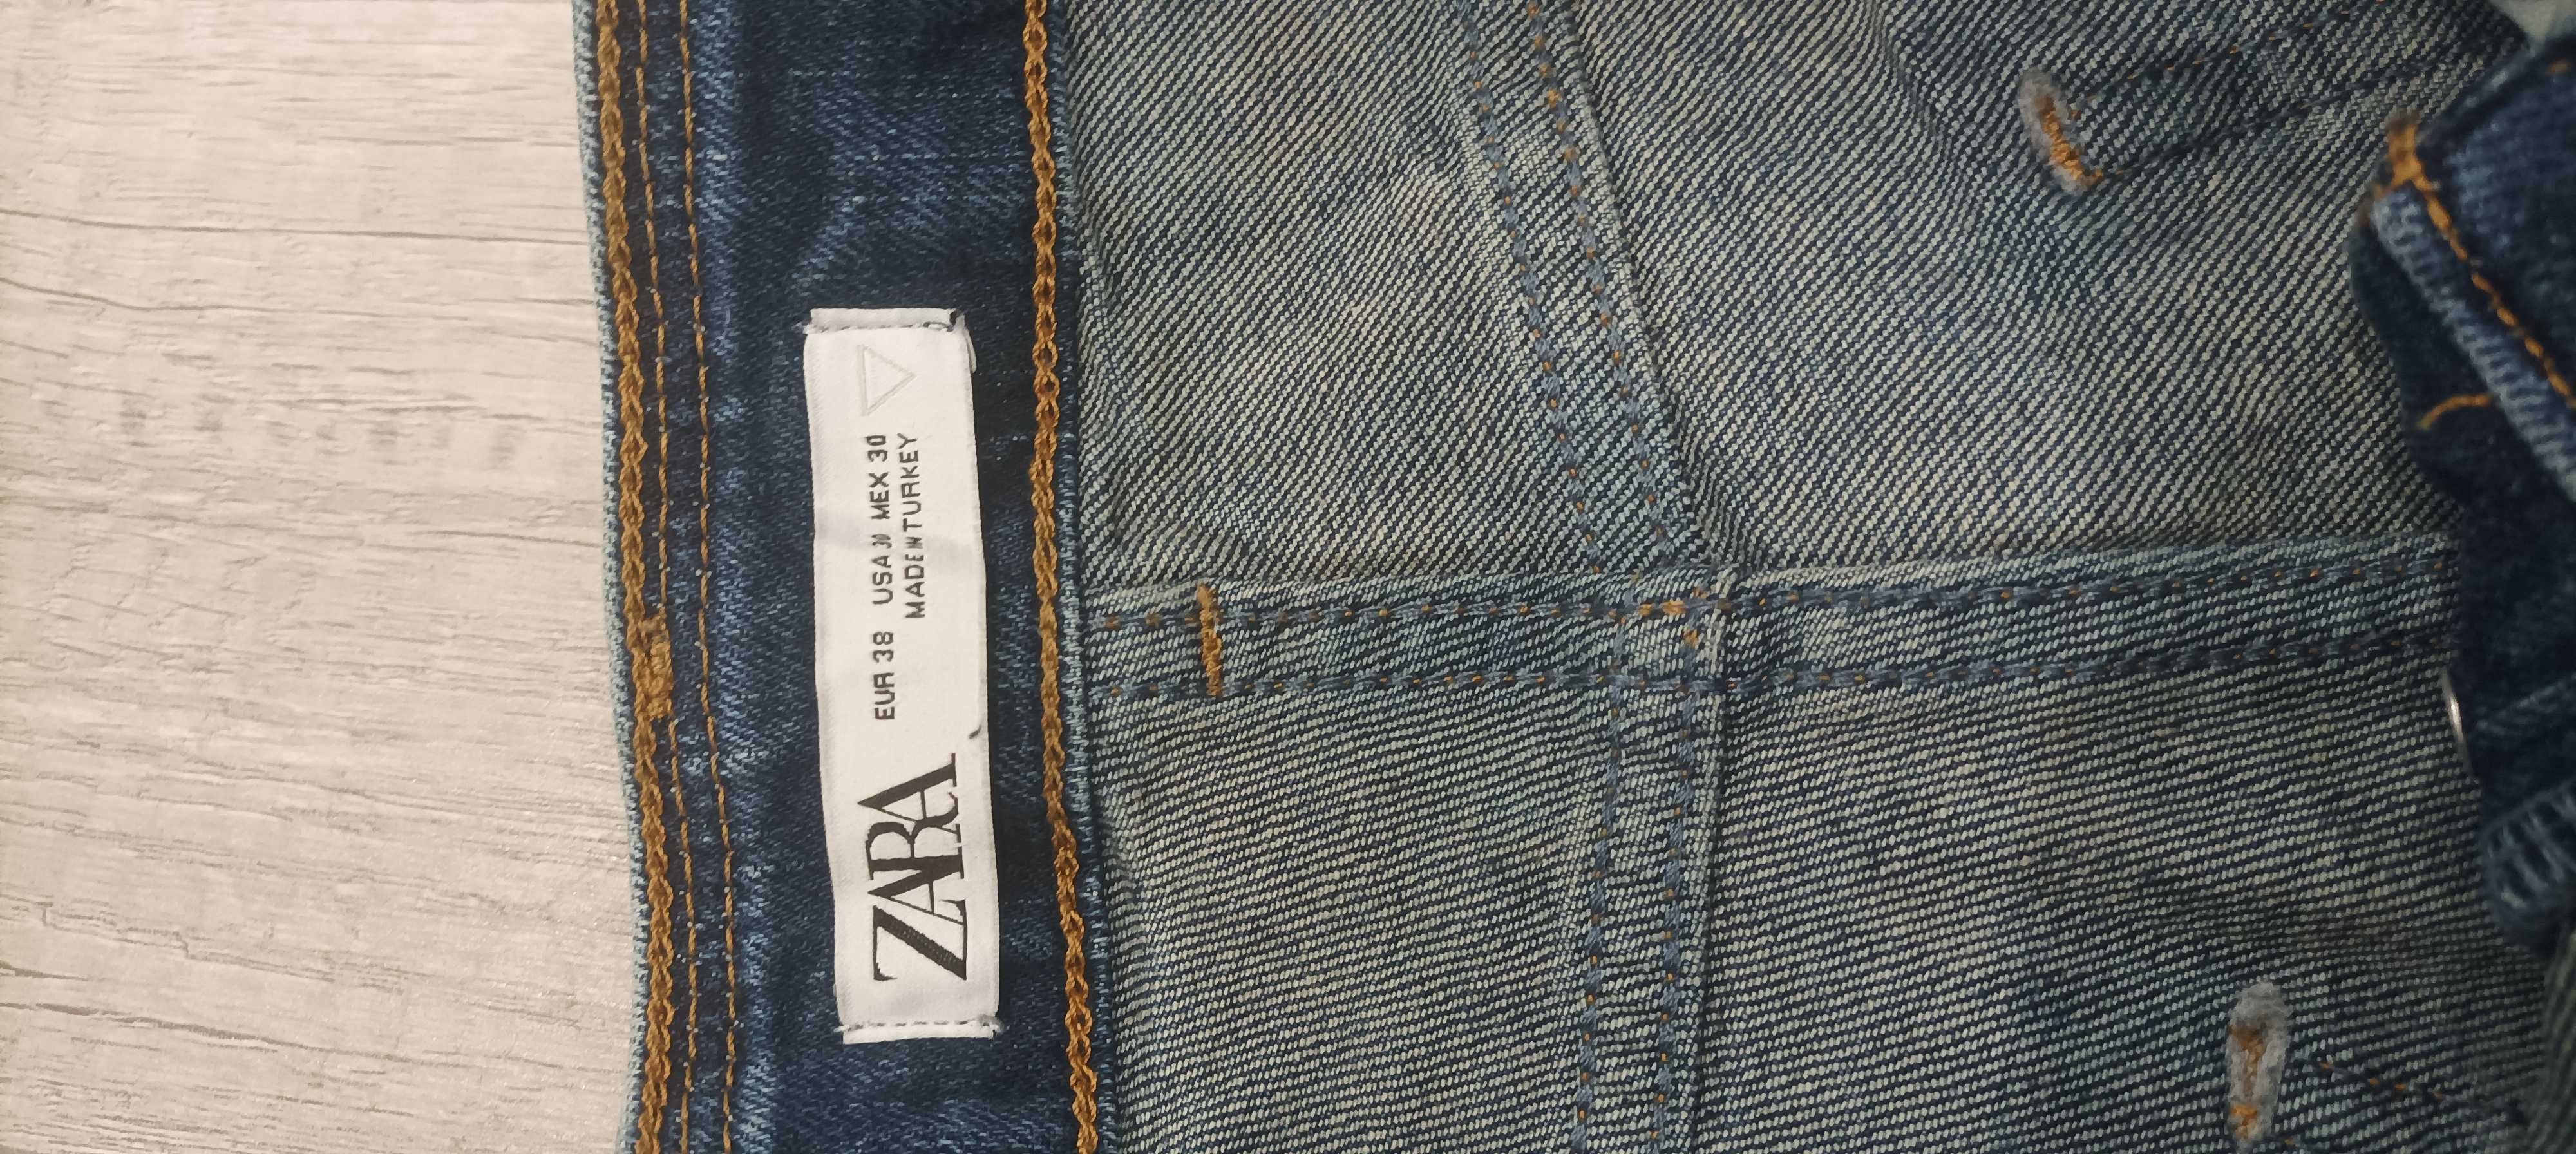 jeansy z dziurami i przetarciami Zara.r.32,stan idealne